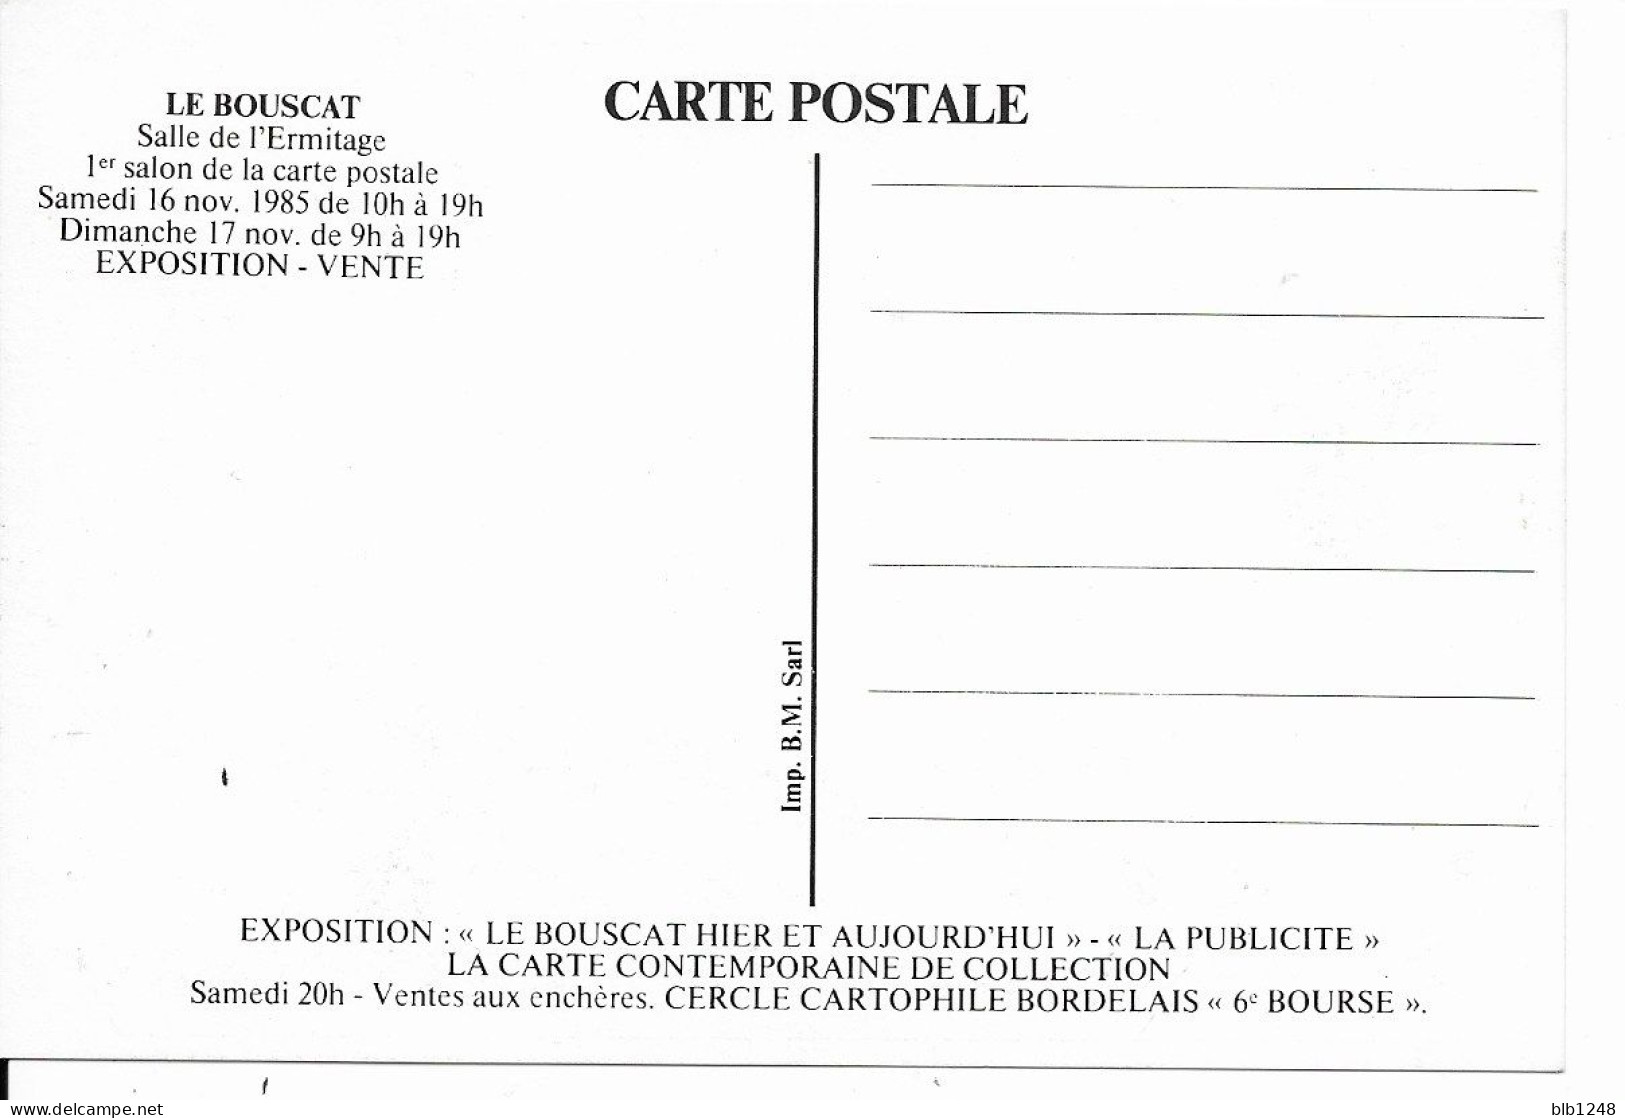 Bourses & Salons De Collections Le Bouscat 1er Salon De La Carte Postale 1985 Programme Plaza De Toros 1930 - Beursen Voor Verzamellars